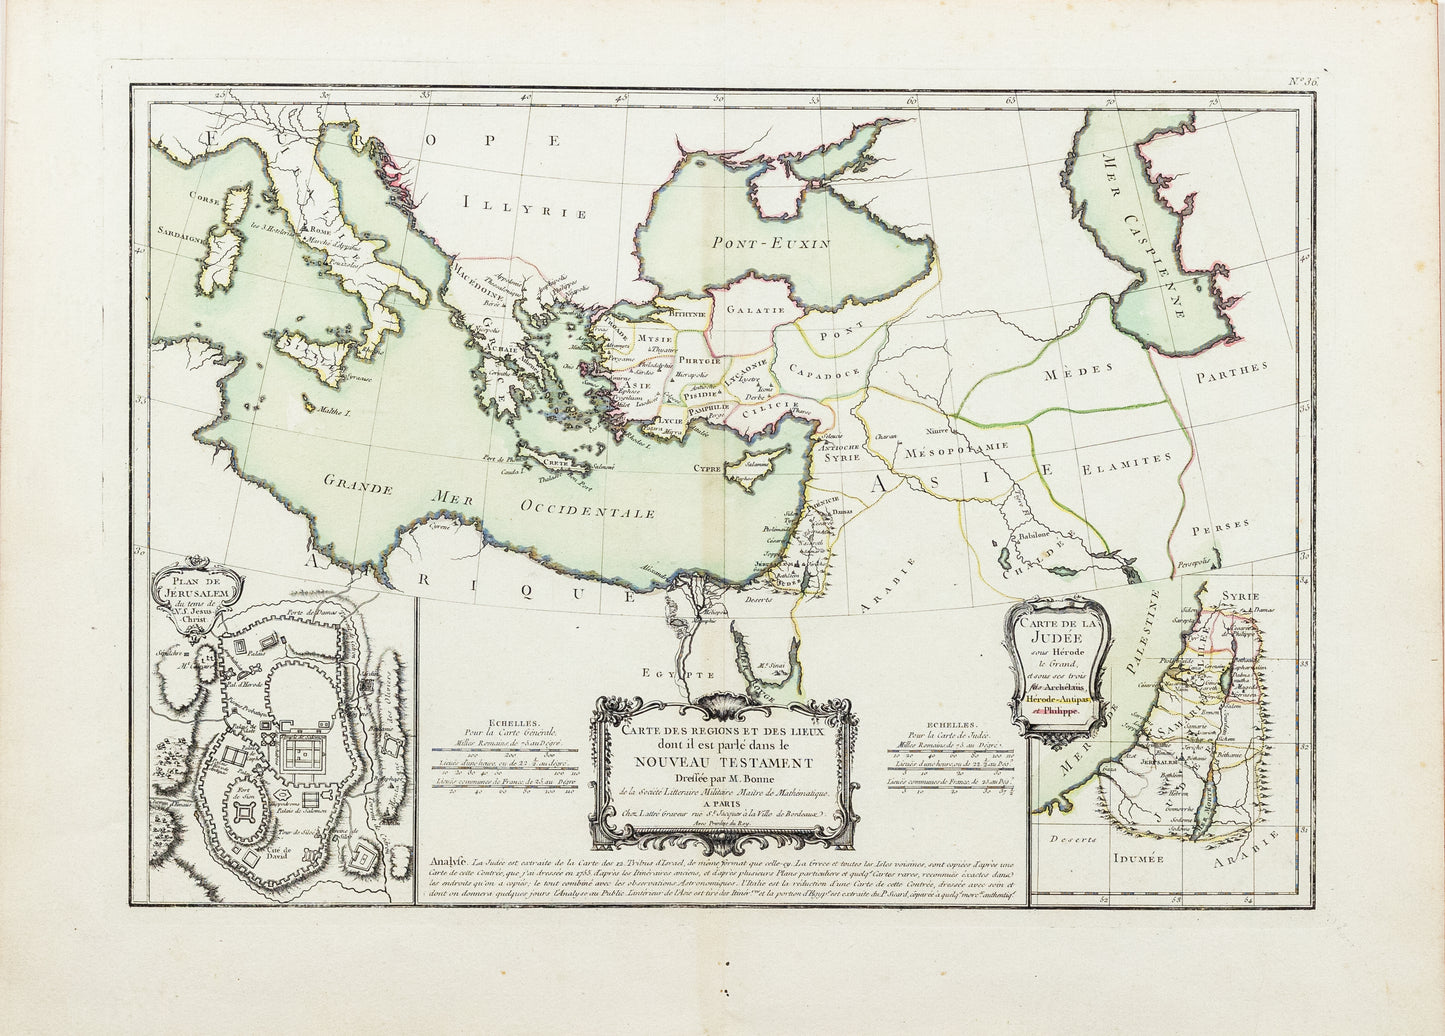 Bonne, Rigobert. Carte de Regions et des lieux dont il est parle dans le Nouveau Testament. Paris, 1760s-1770s